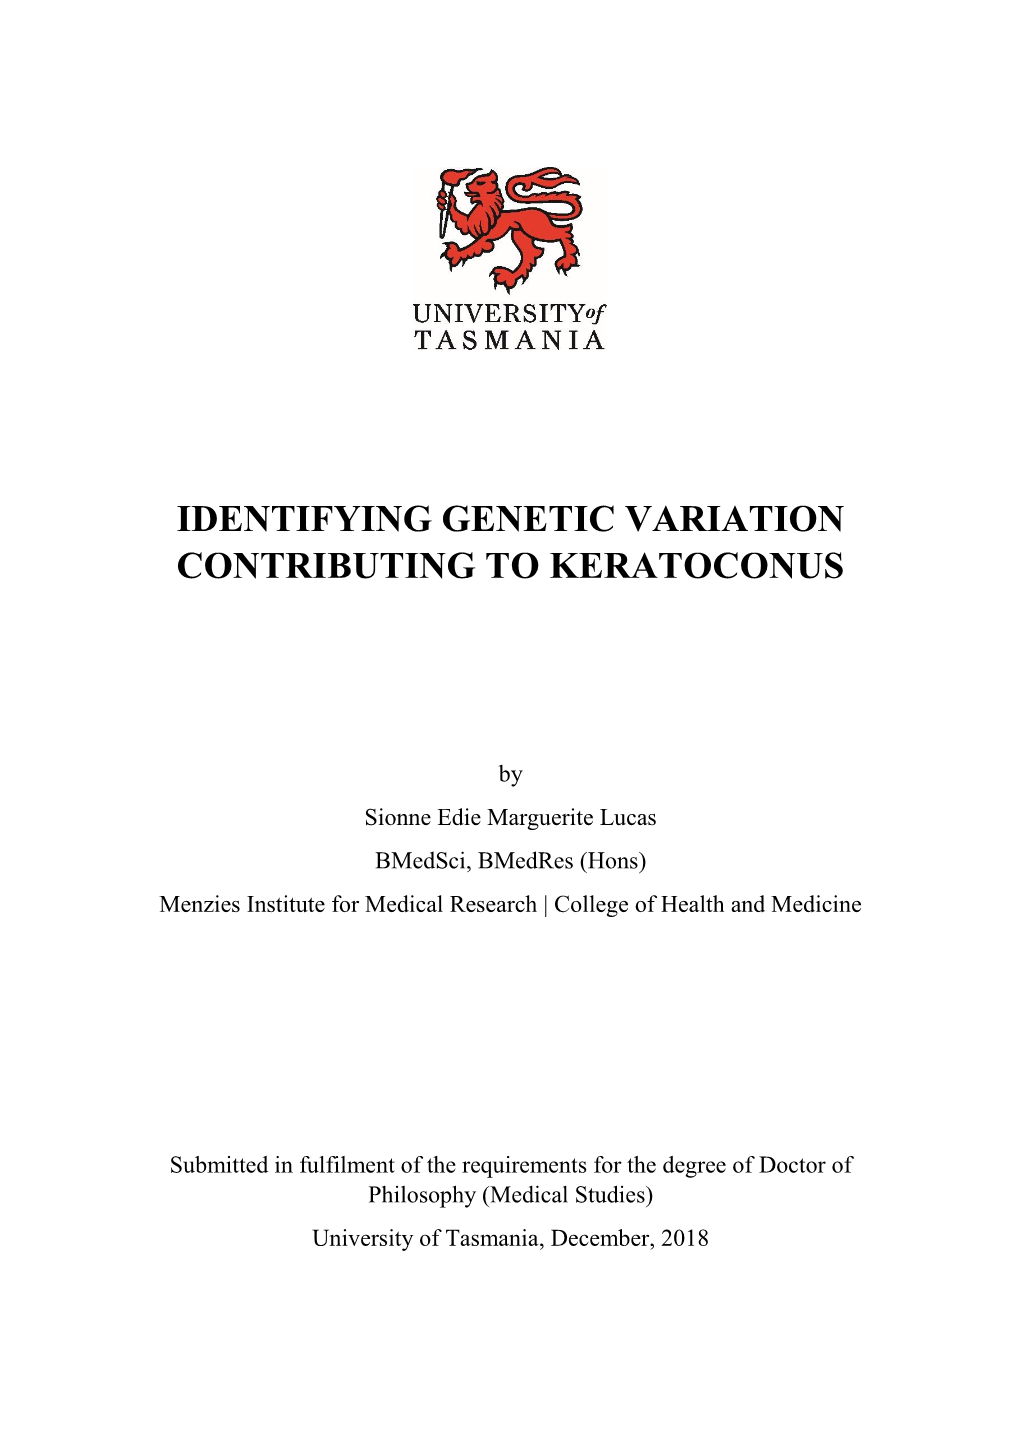 Identifying Genetic Variation Contributing to Keratoconus